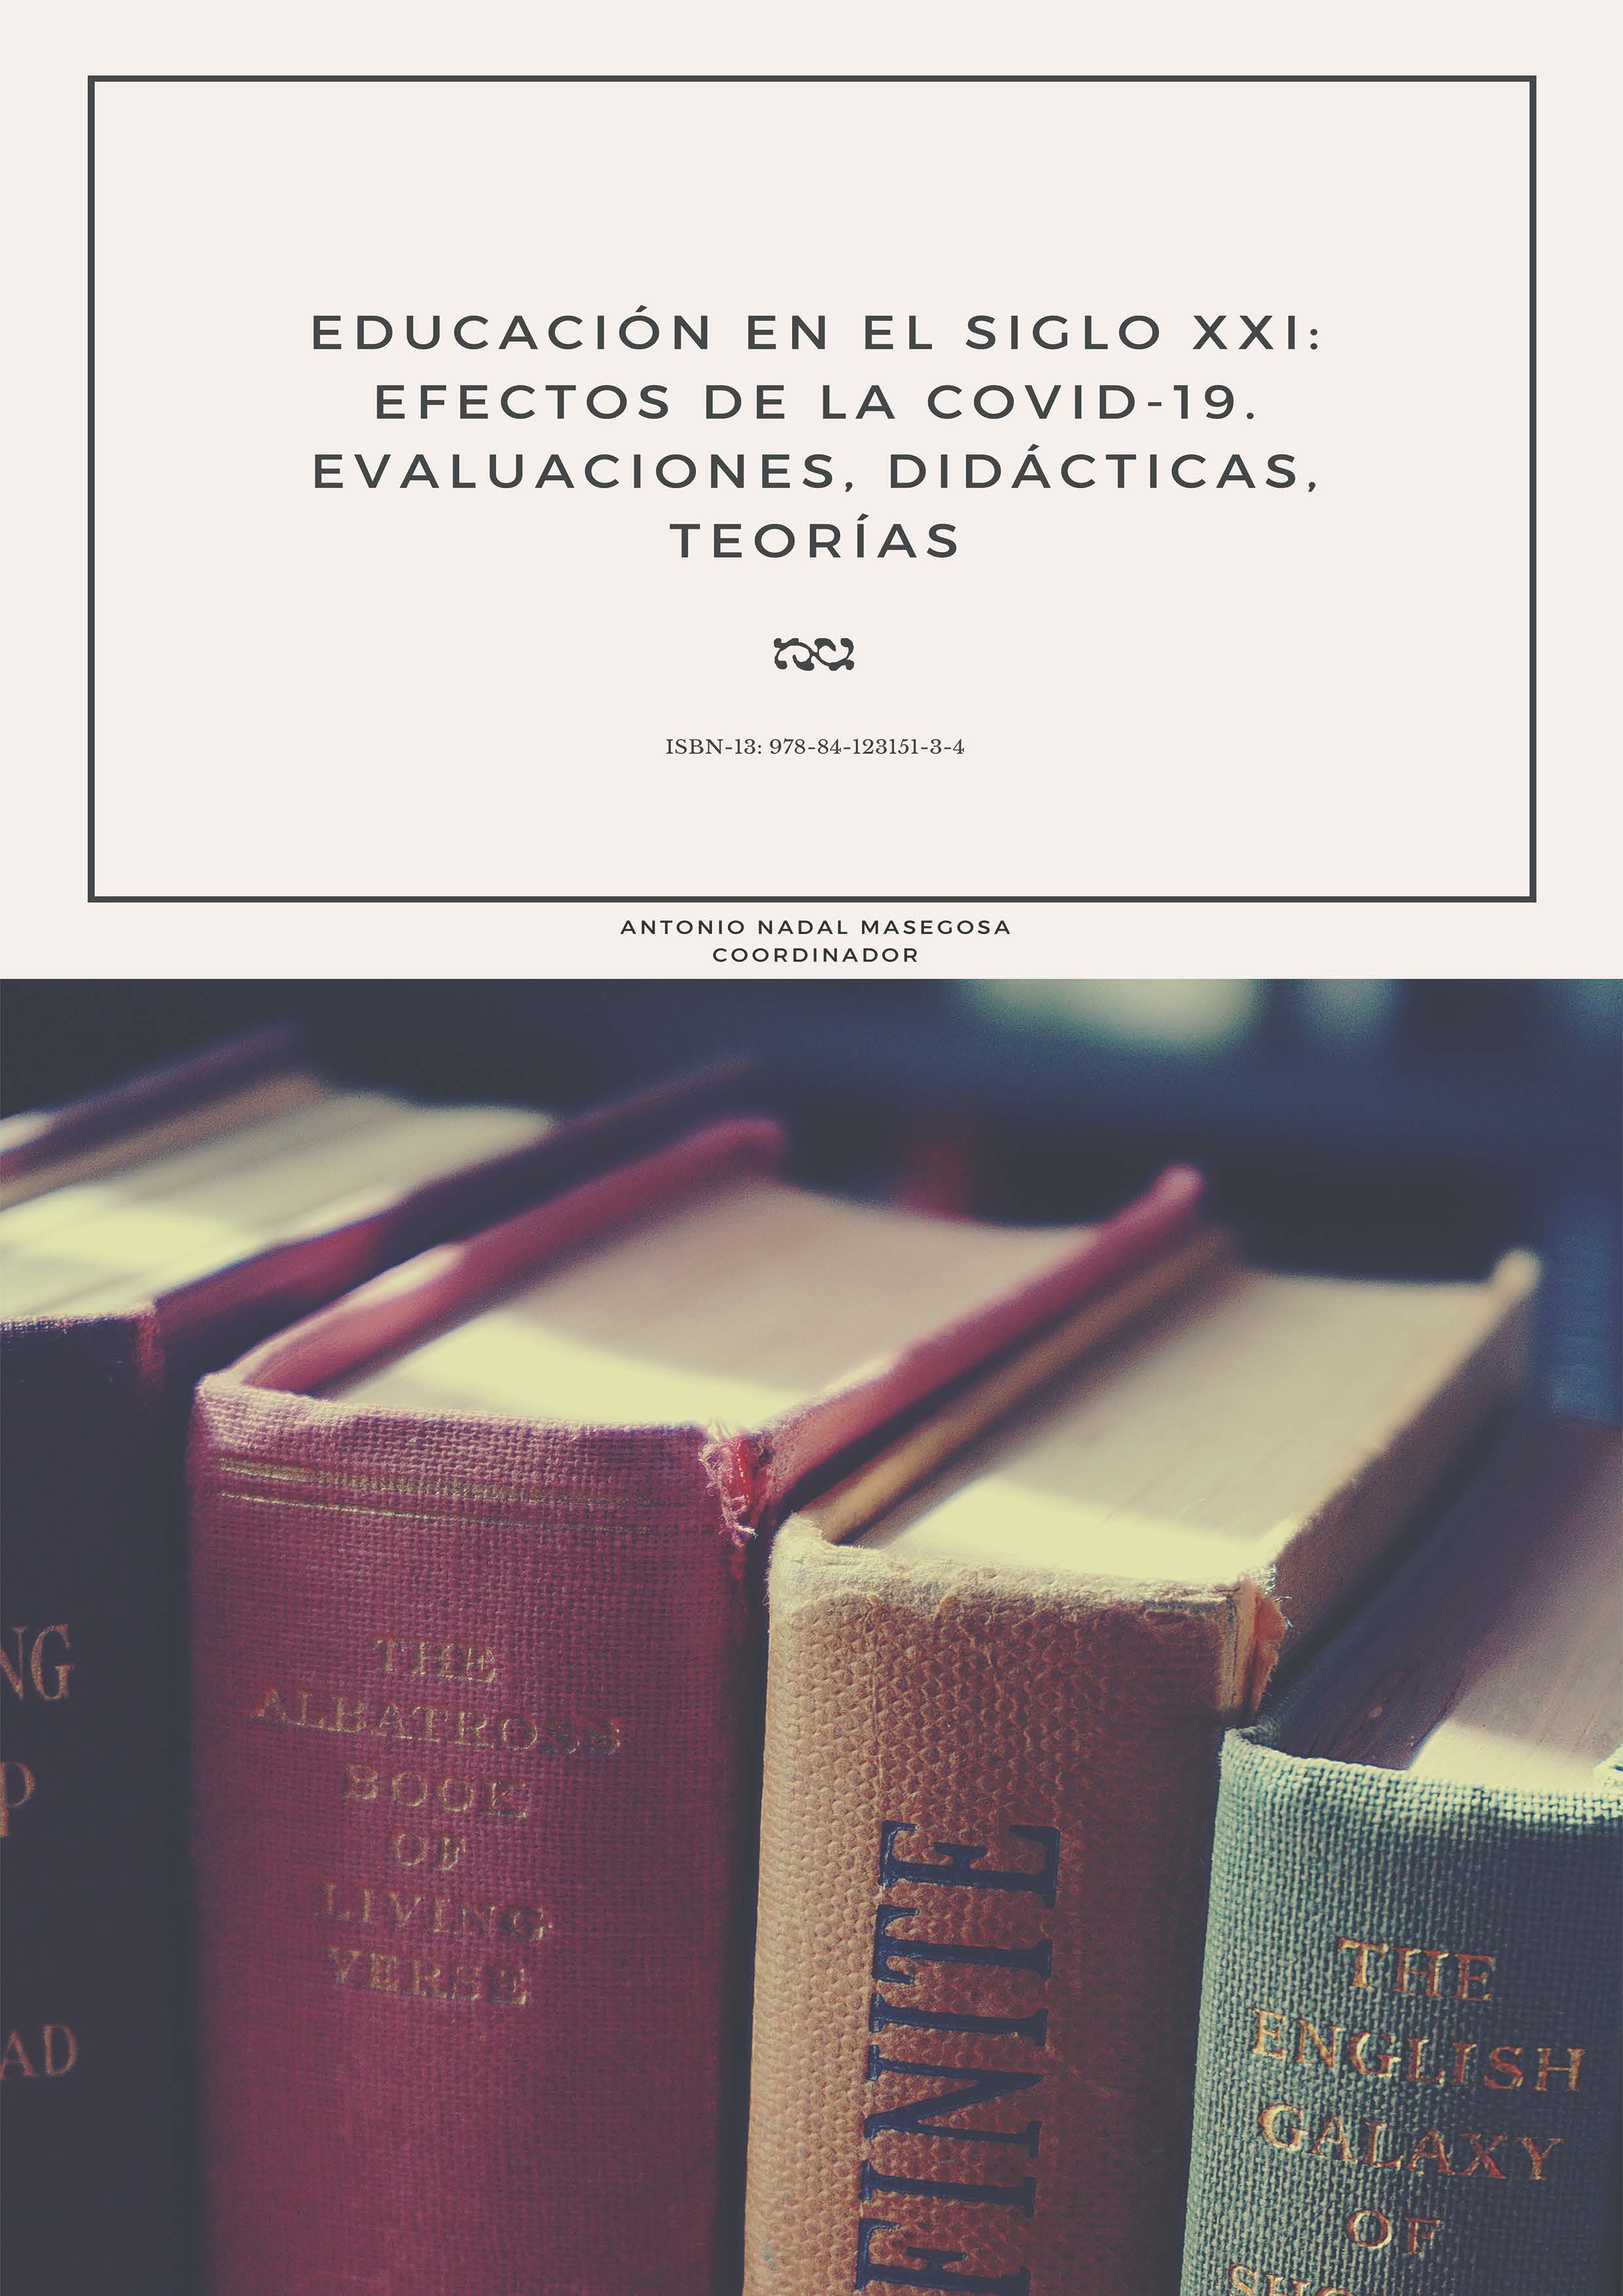 EDUCACIÓN EN EL SIGLO XXI: EFECTOS DE LA COVID-19. Evaluaciones, didácticas, teorías.